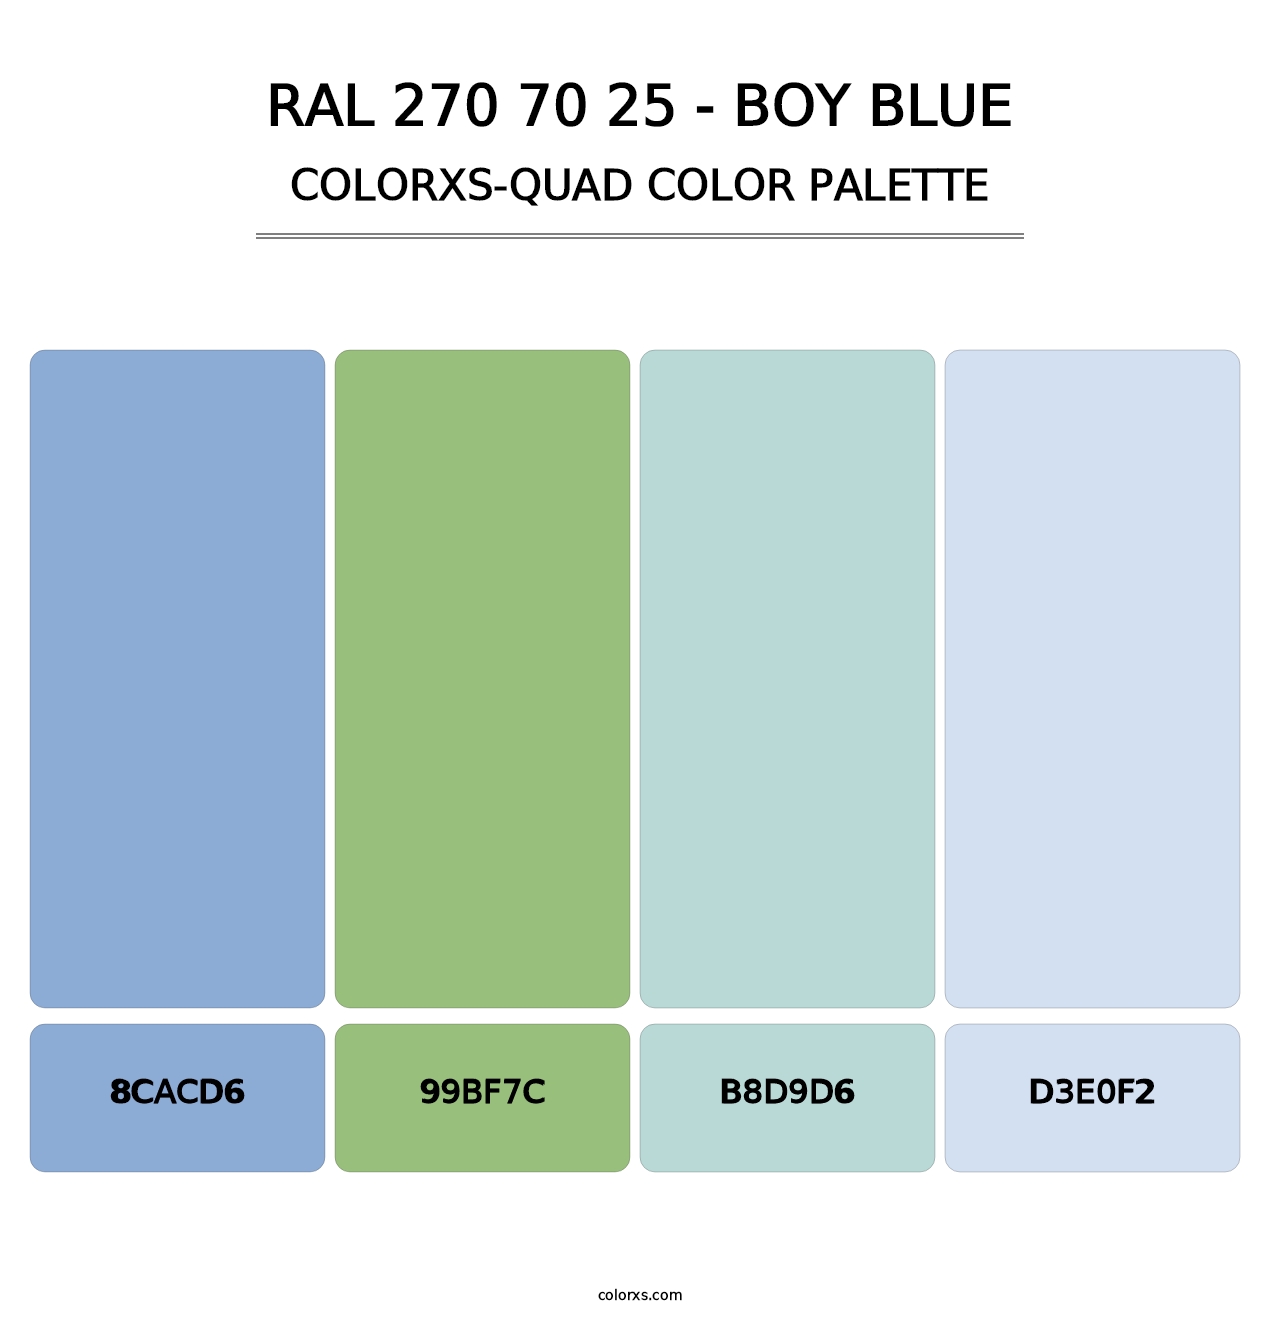 RAL 270 70 25 - Boy Blue - Colorxs Quad Palette